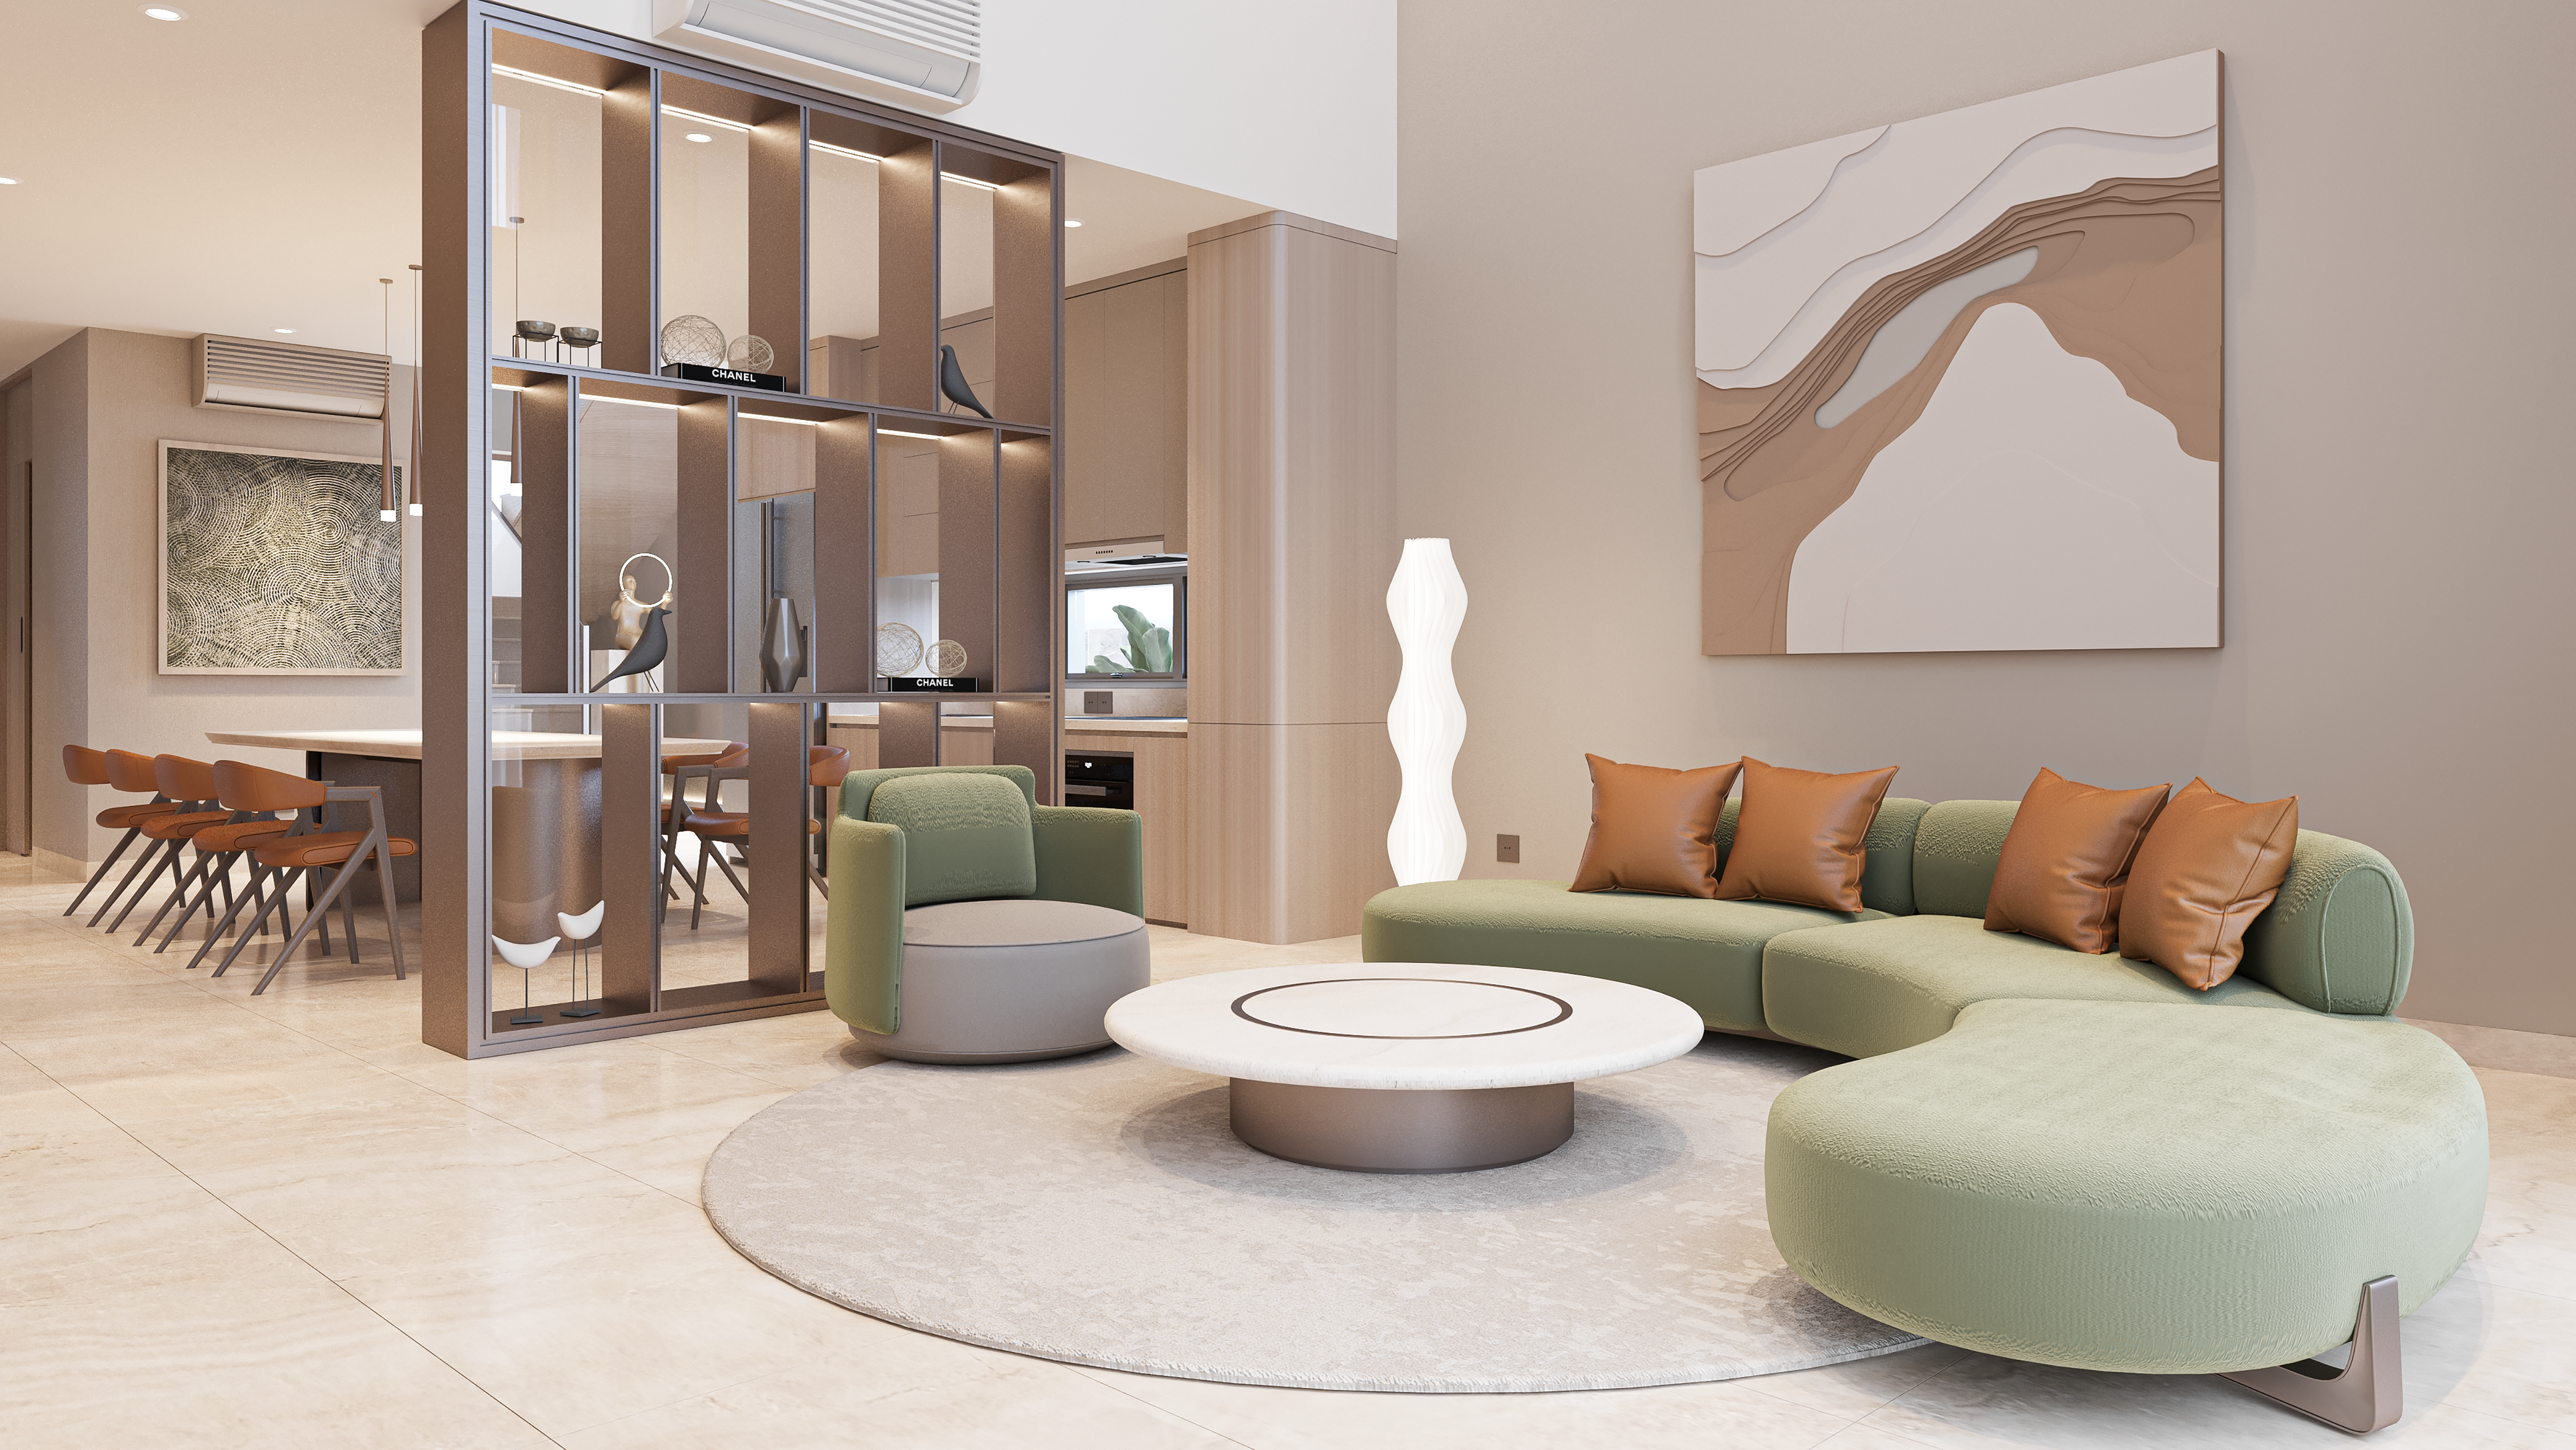 Regal Group đầu tư loạt biệt thự hoàn thiện nội thất khi nhu cầu thuê villa sang trọng rất cao